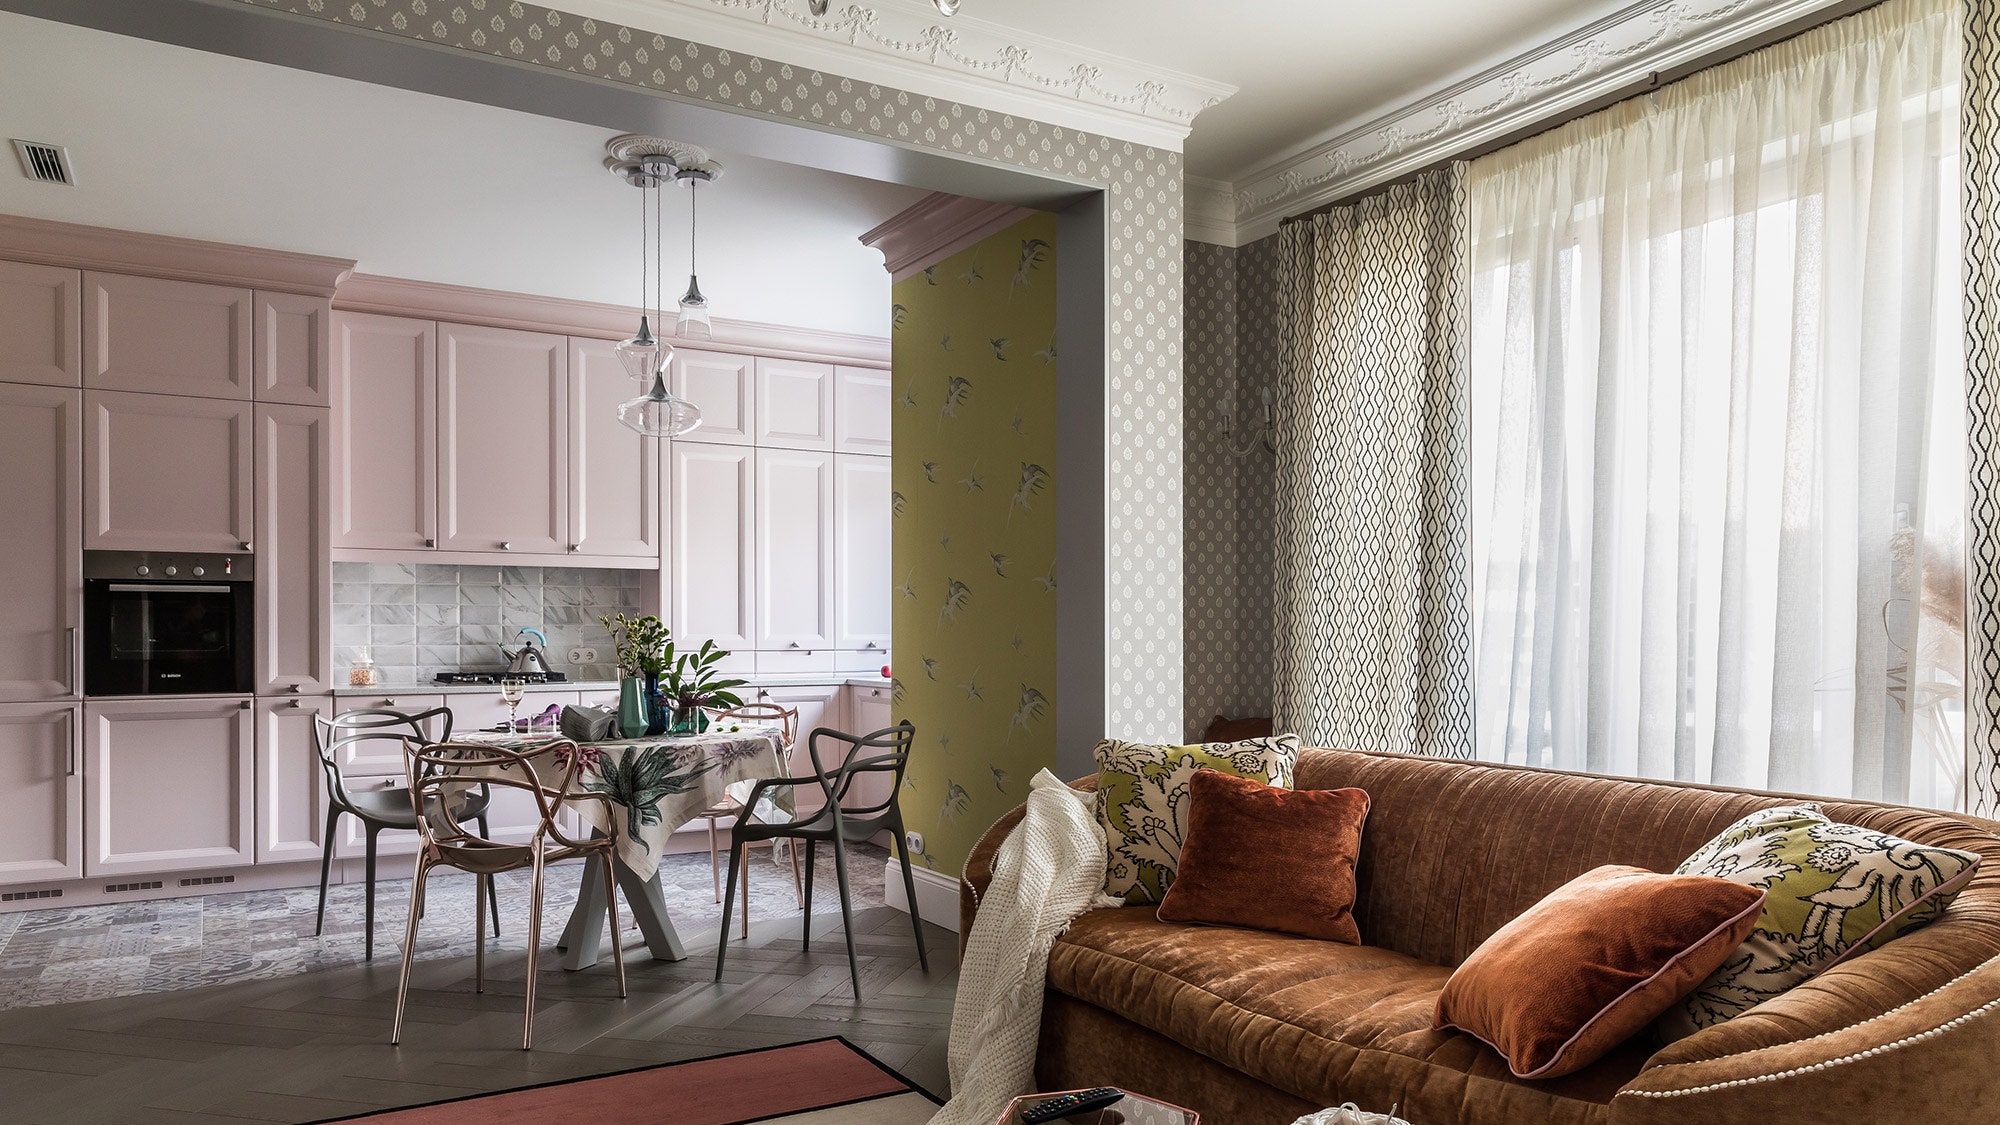 Дизайн интерьера квартиры с орнаментами по проекту Ксении Дуравиной 69 м²